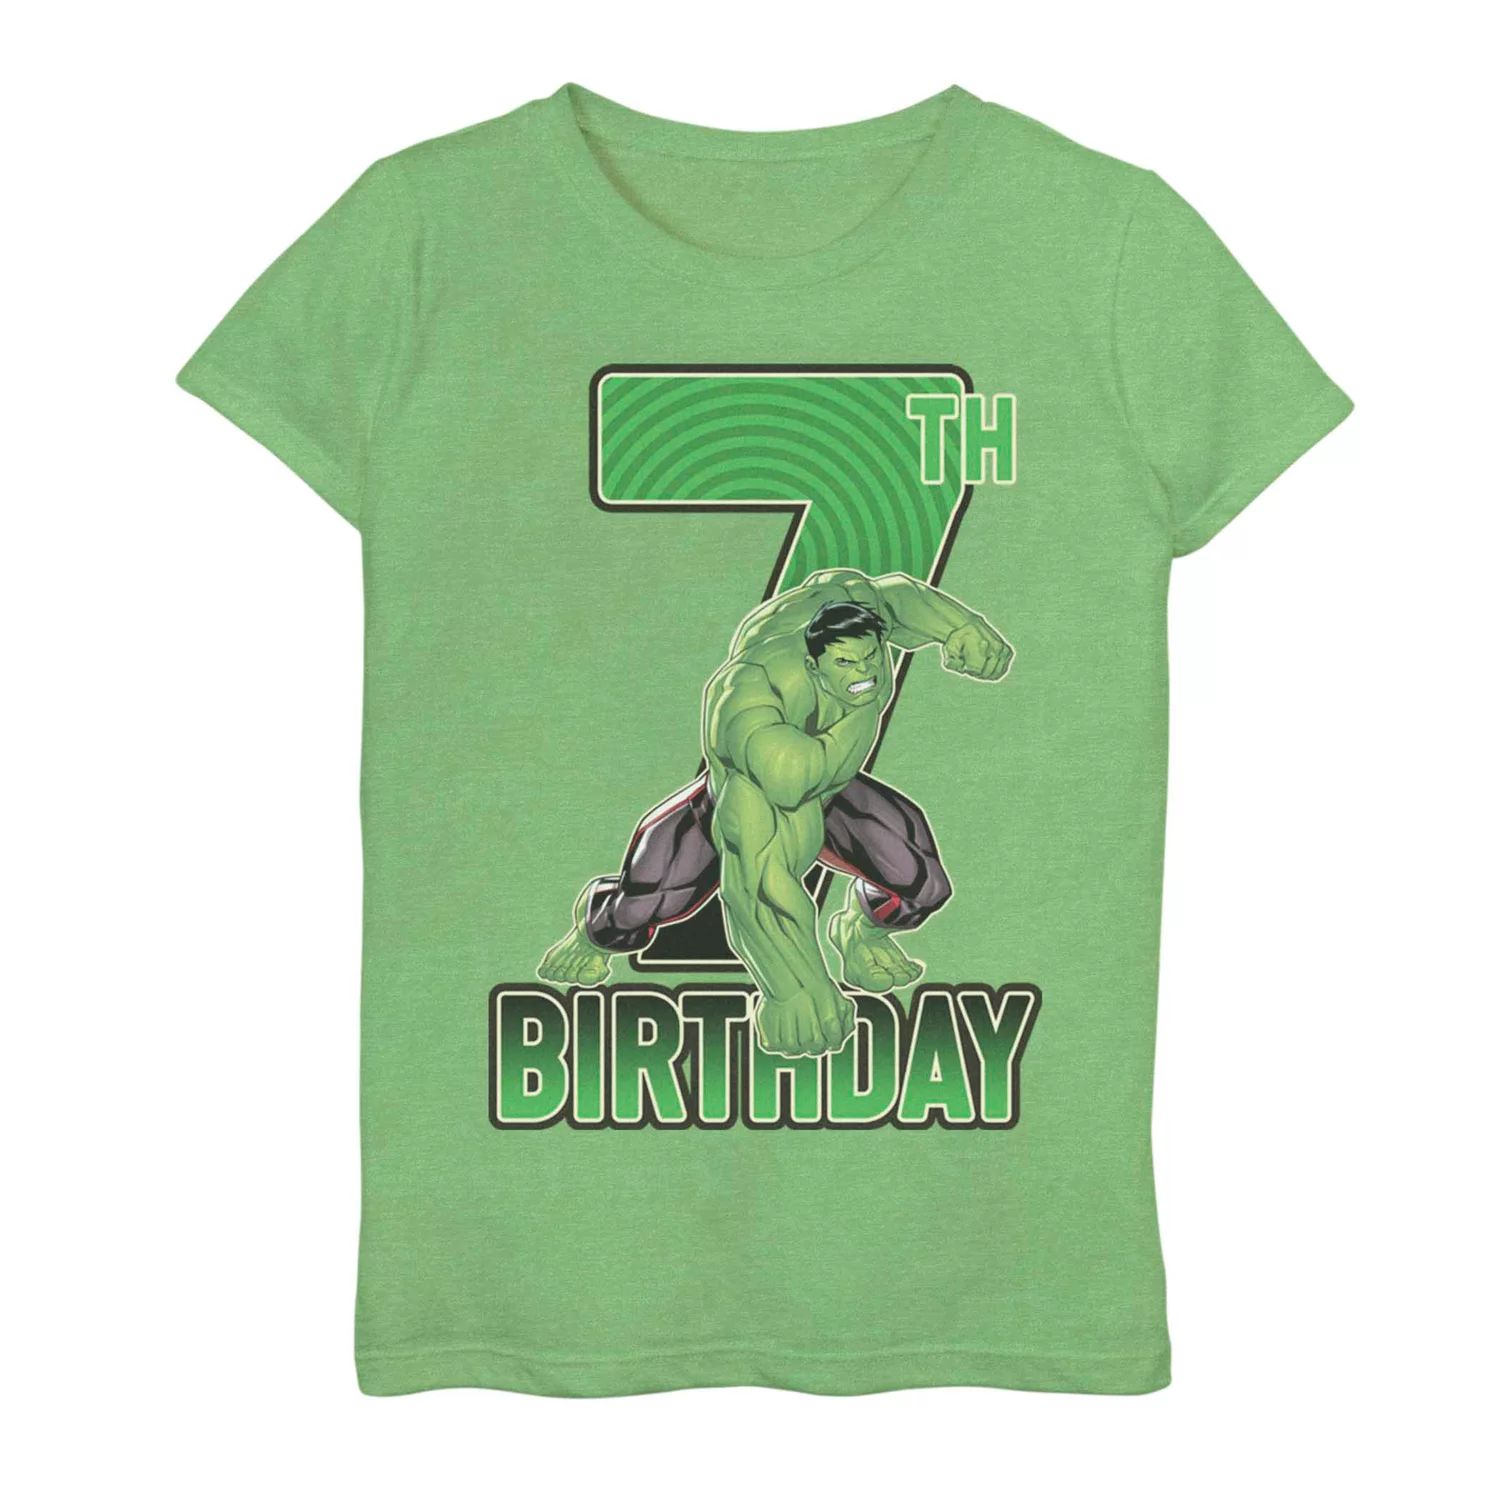 Футболка на 7-й день рождения для девочек 7–16 лет с изображением Марвел Халка Licensed Character футболка с изображением рожденного февраля 1950 года ограниченный выпуск подарки на 70 й день рождения футболка